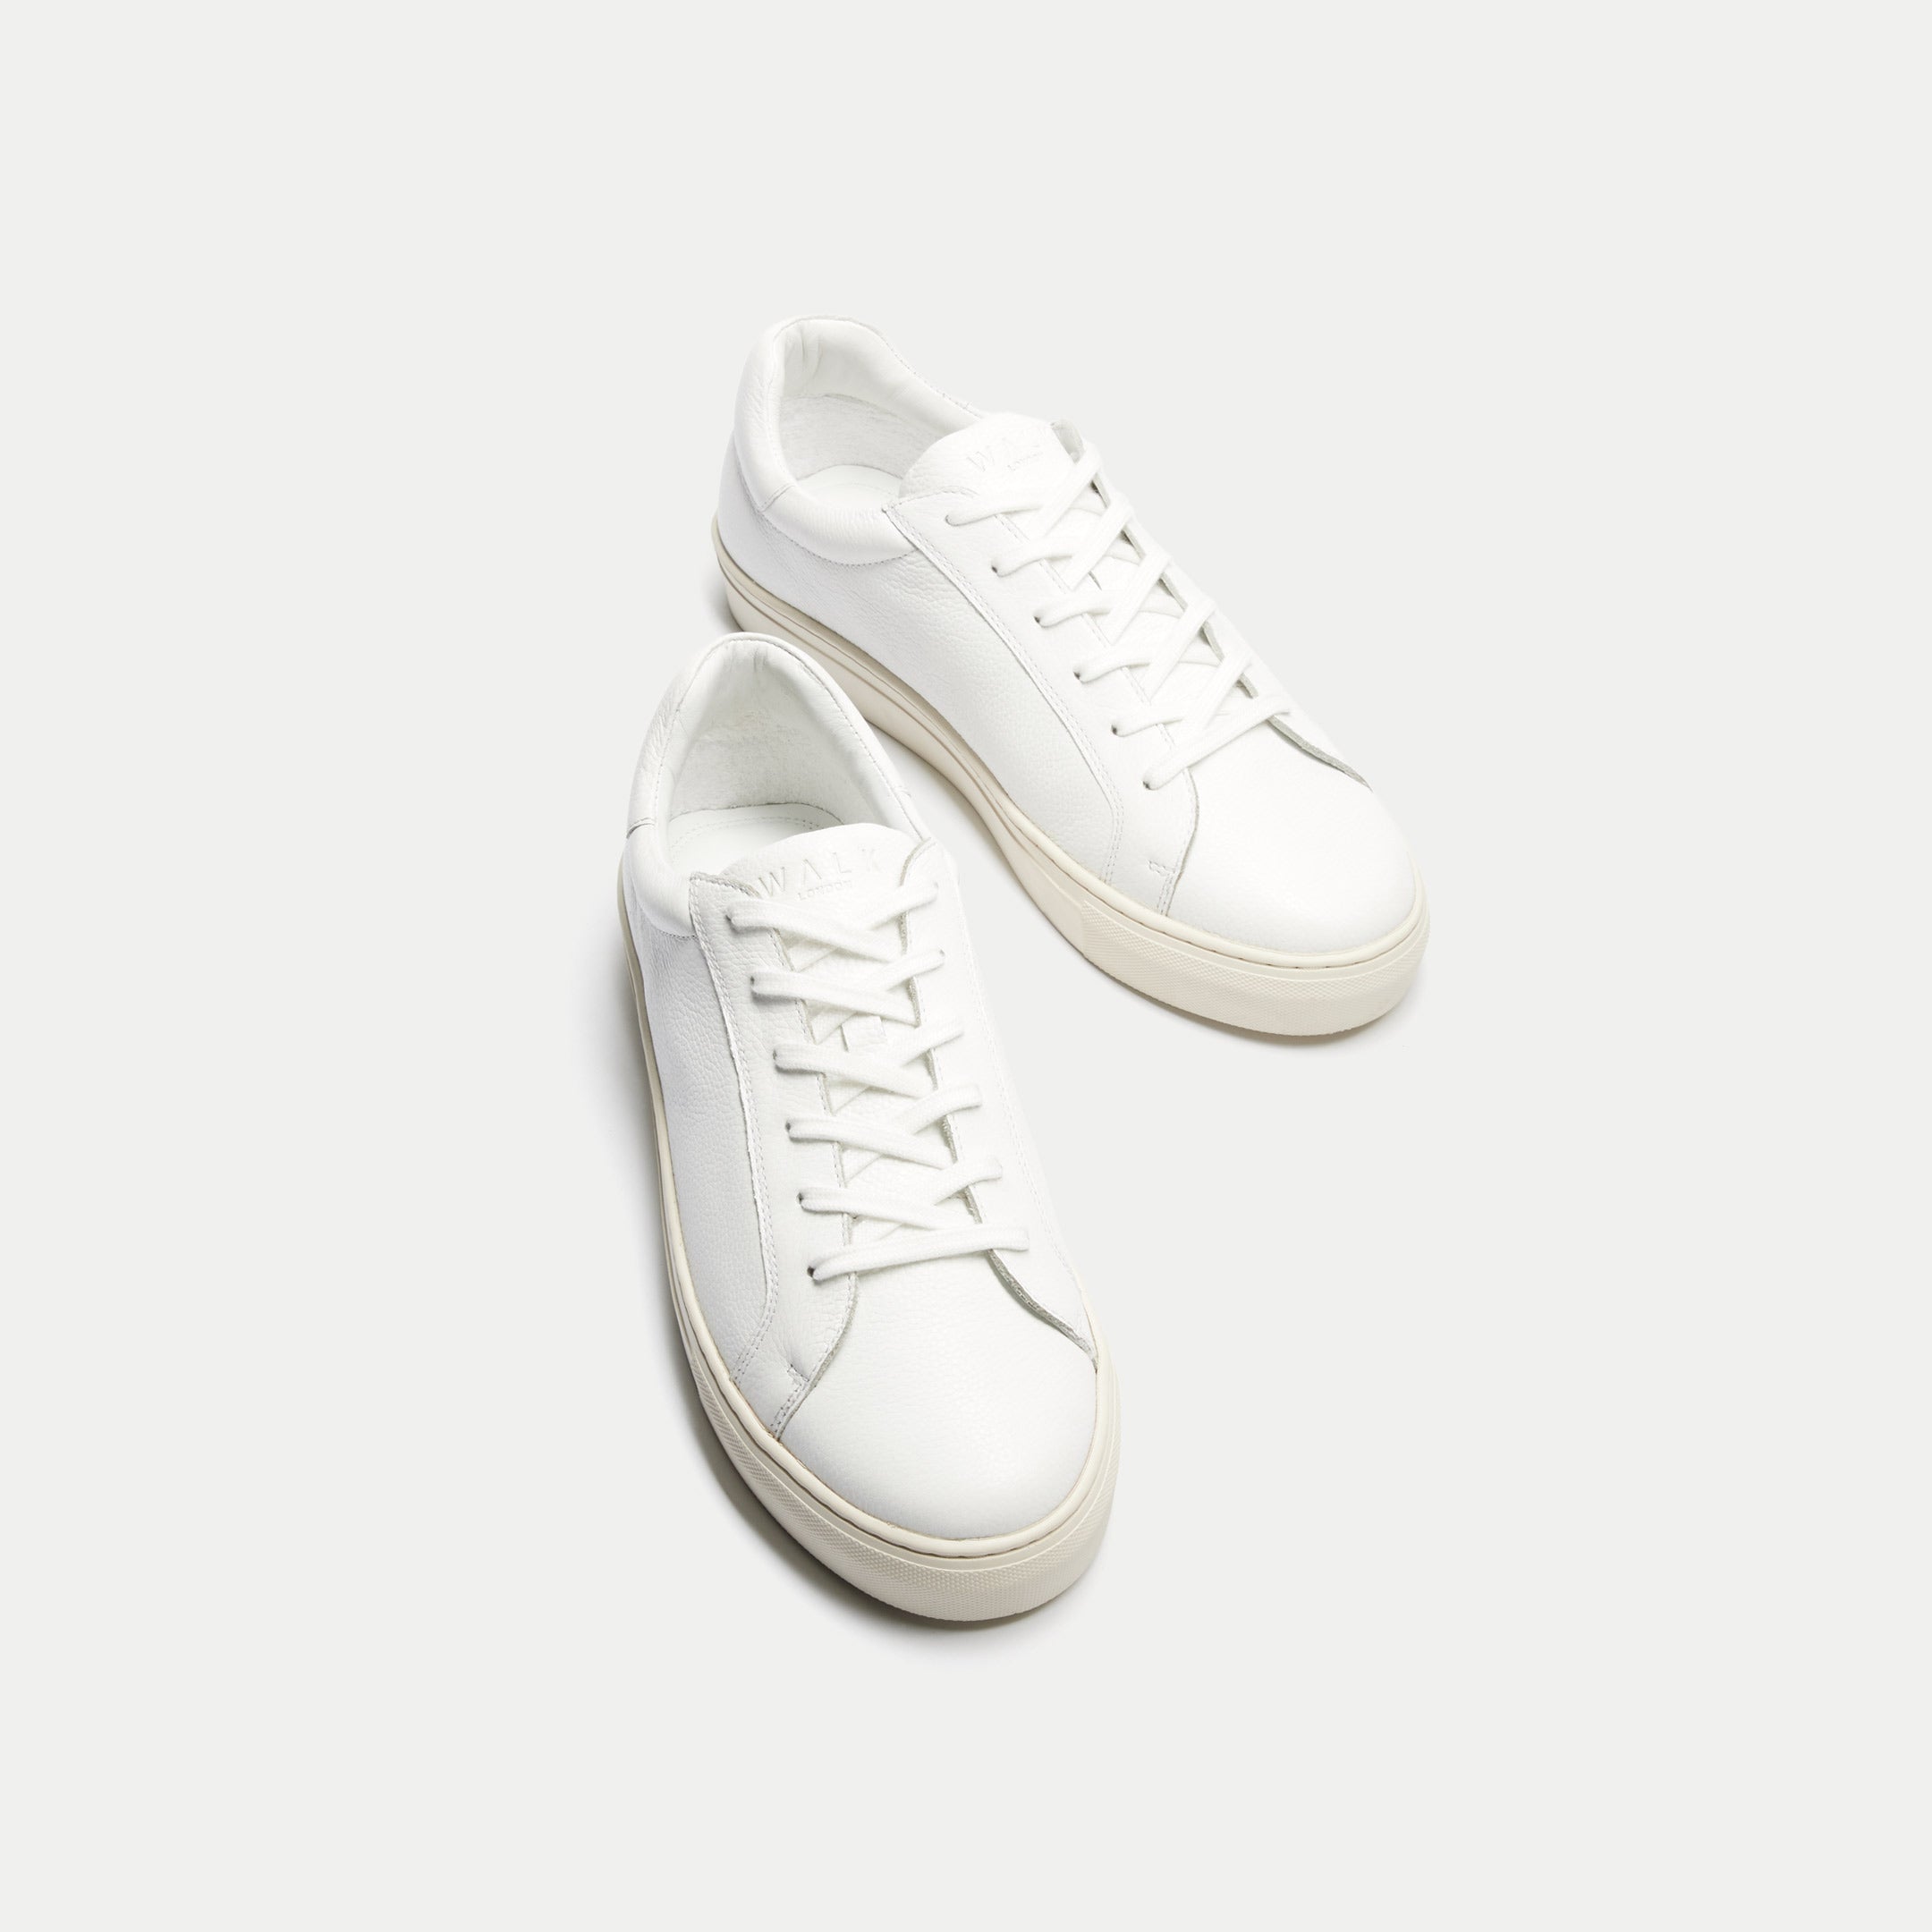 Walk London Mens Harrison Sneaker in White Leather